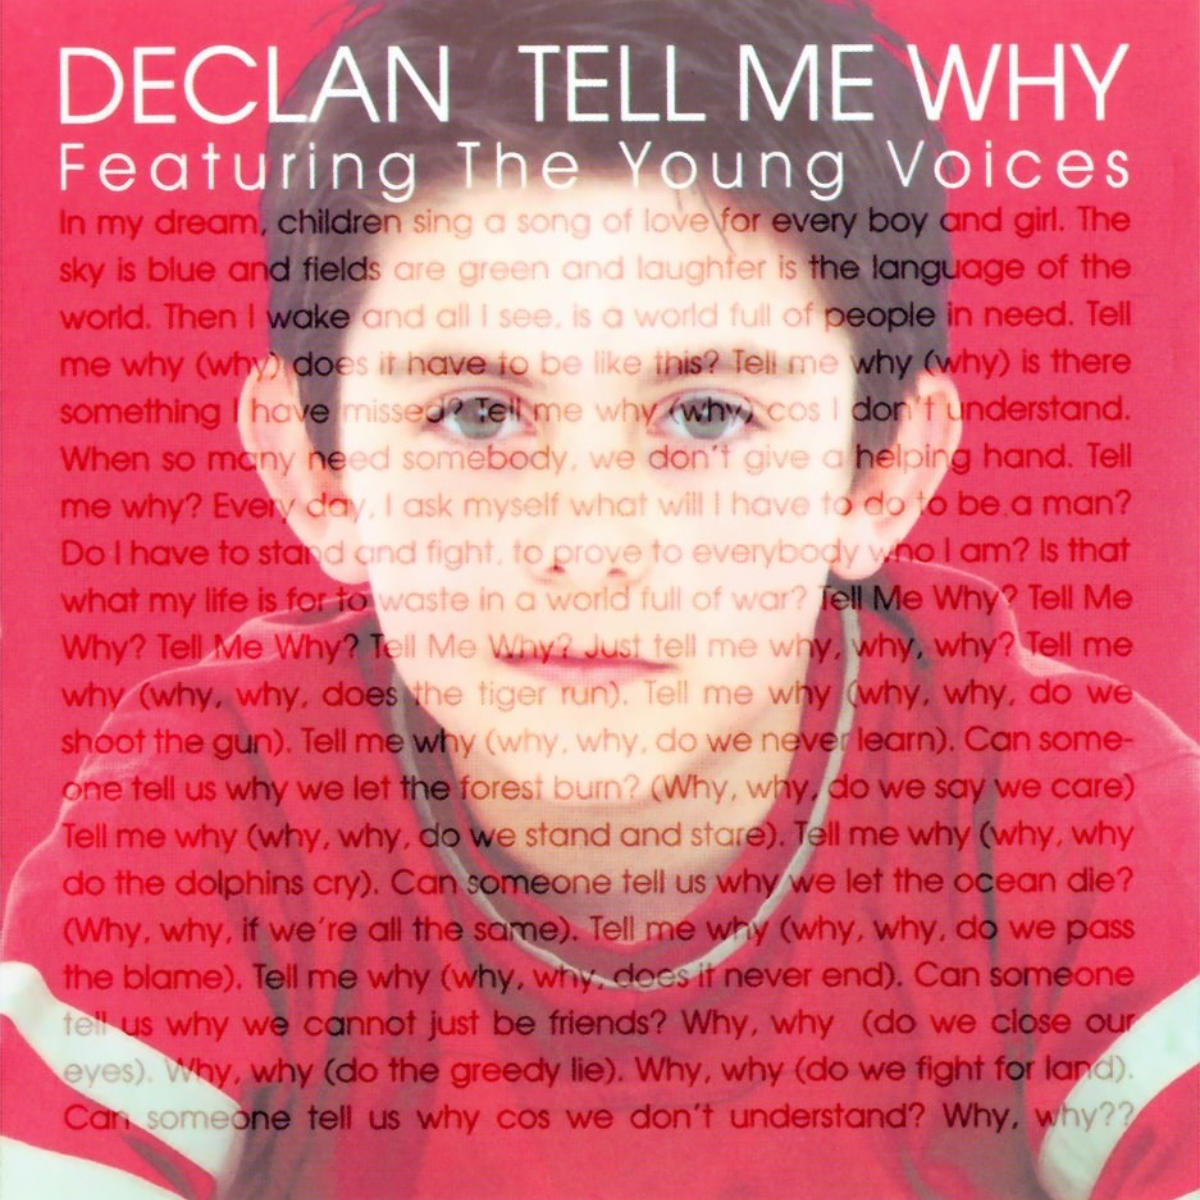 Tell me why boy. Tell me why Деклан Гэлбрейт. Tell me why песня Declan Galbraith. Tell me why песня. Declan Galbraith "tell me why?" Перевод.